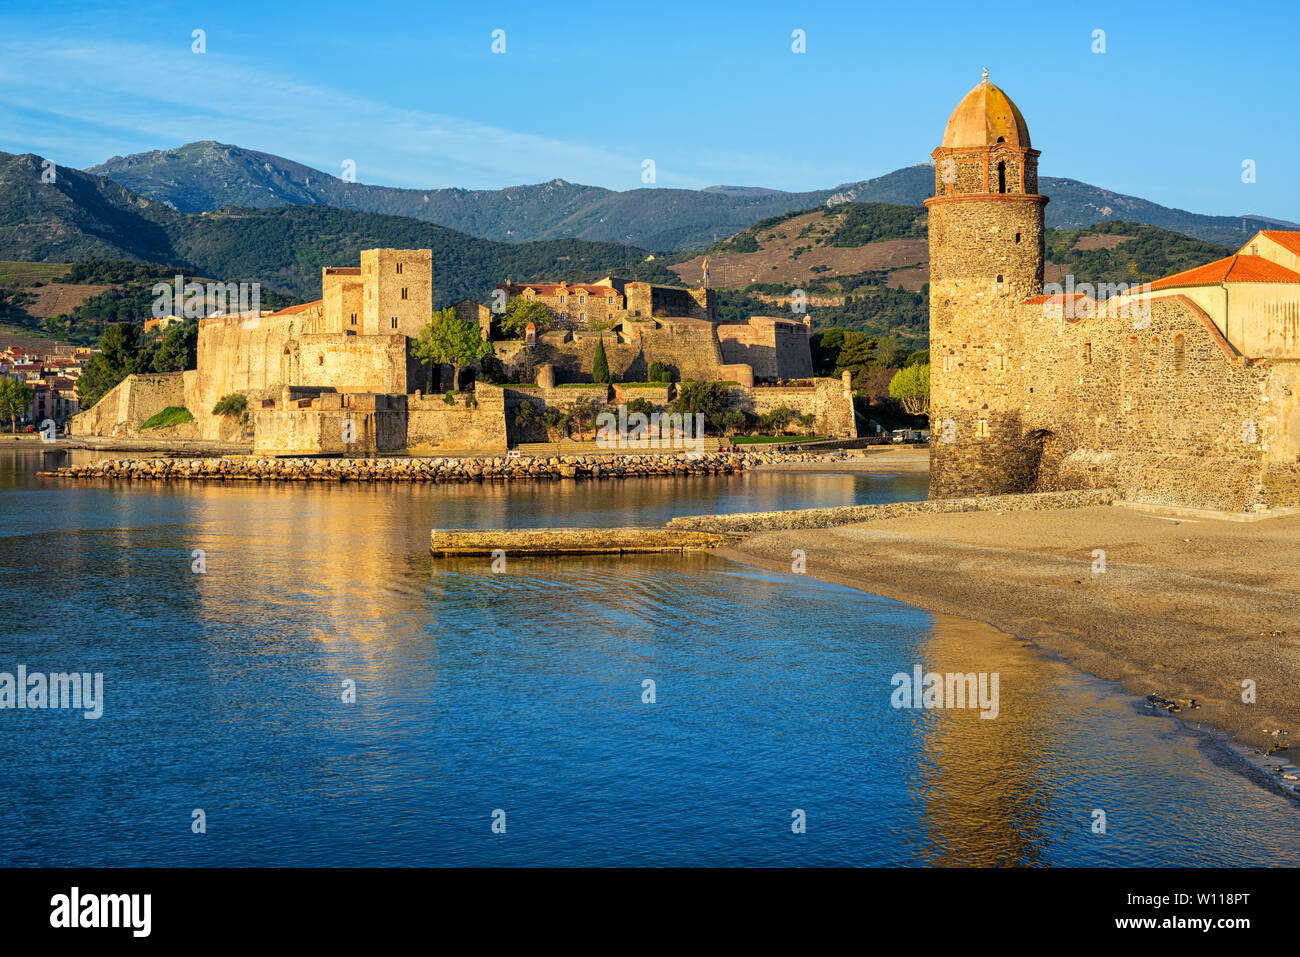 La ville de Collioure, France, vue sur le château médiéval château royal et clocher de l'Église entre Pyrénées et mer Méditerranée Banque D'Images